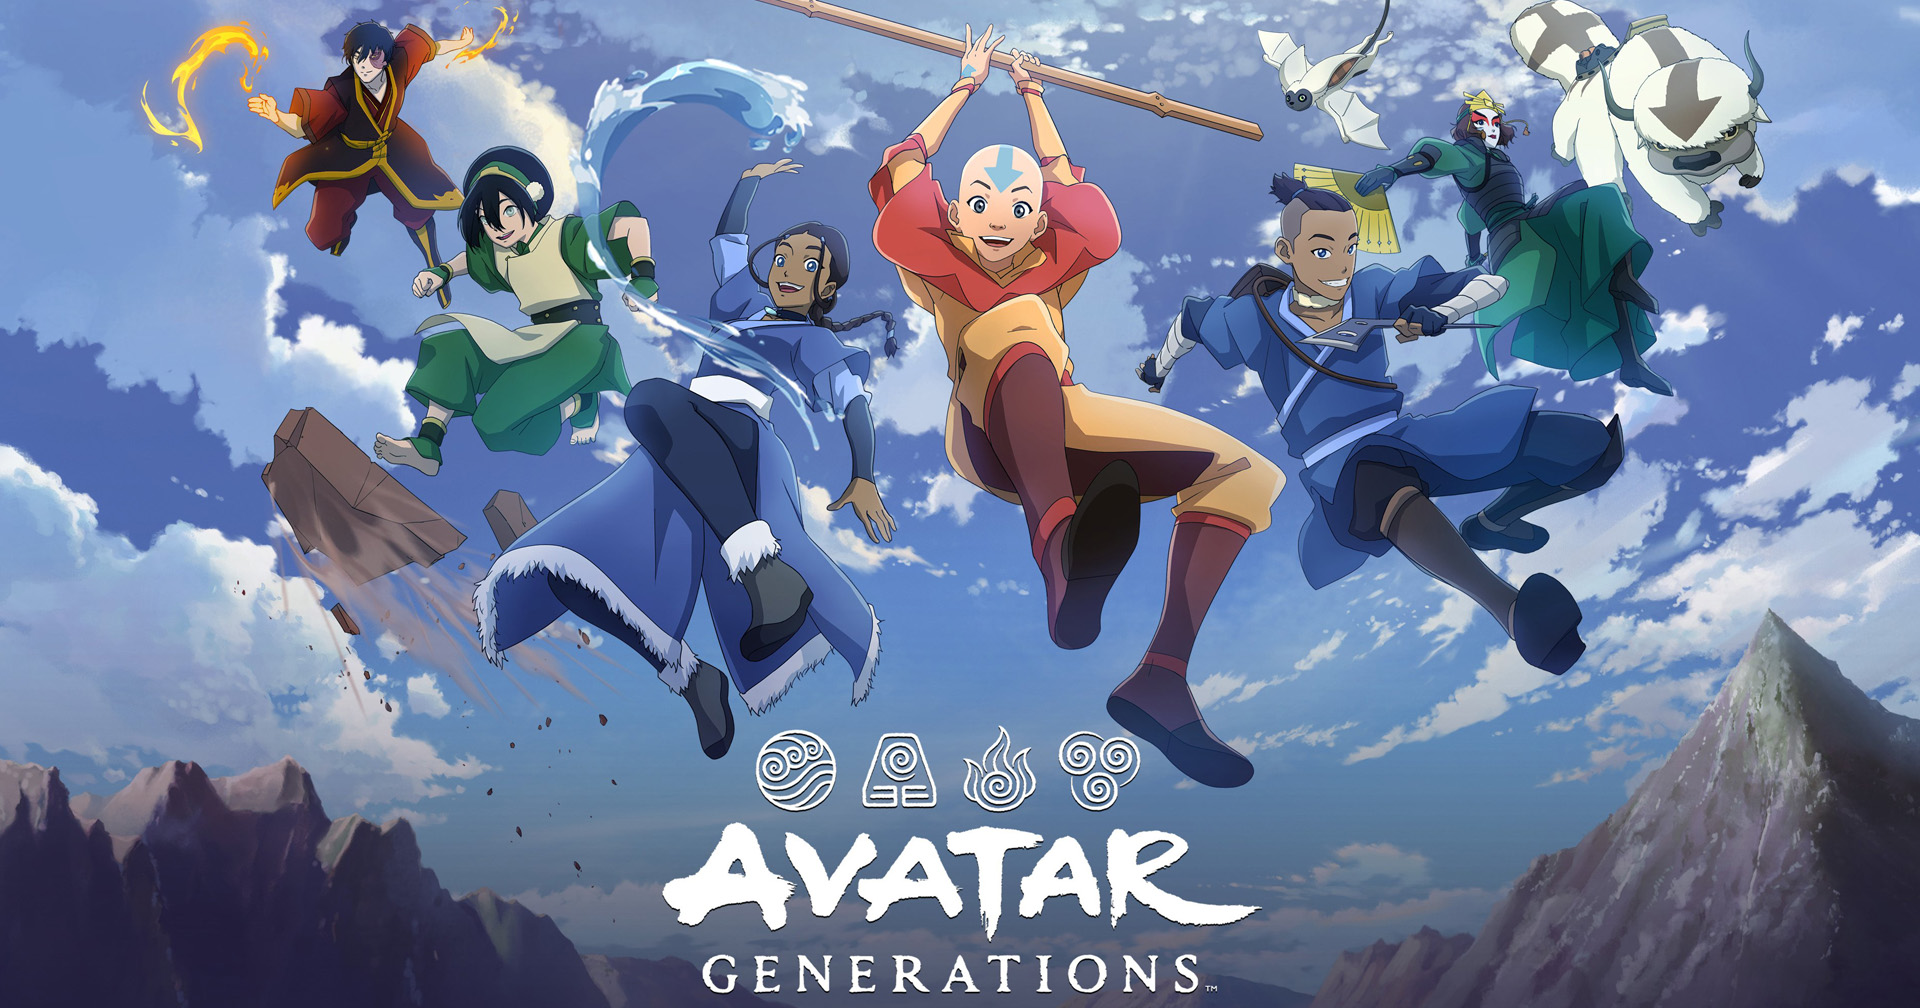 [รีวิวเกม] Avatar Generations เกมมือถือ RPG จากการ์ตูนดัง ออกเดินทางฝึกวิชาควบคุมธาตุกันเถอะ